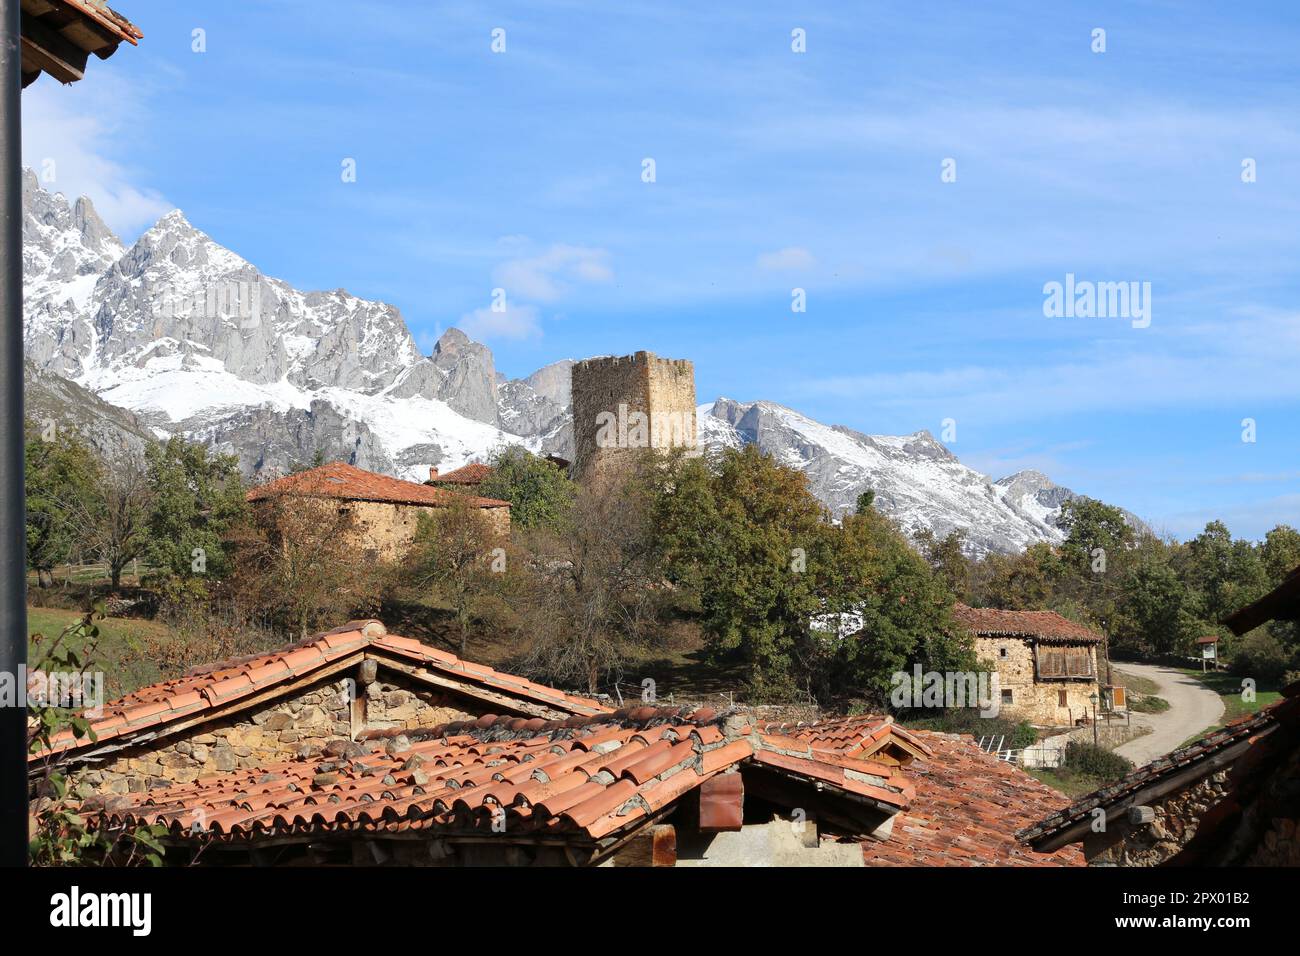 Pueblo de montaña con torre medieval Stock Photo